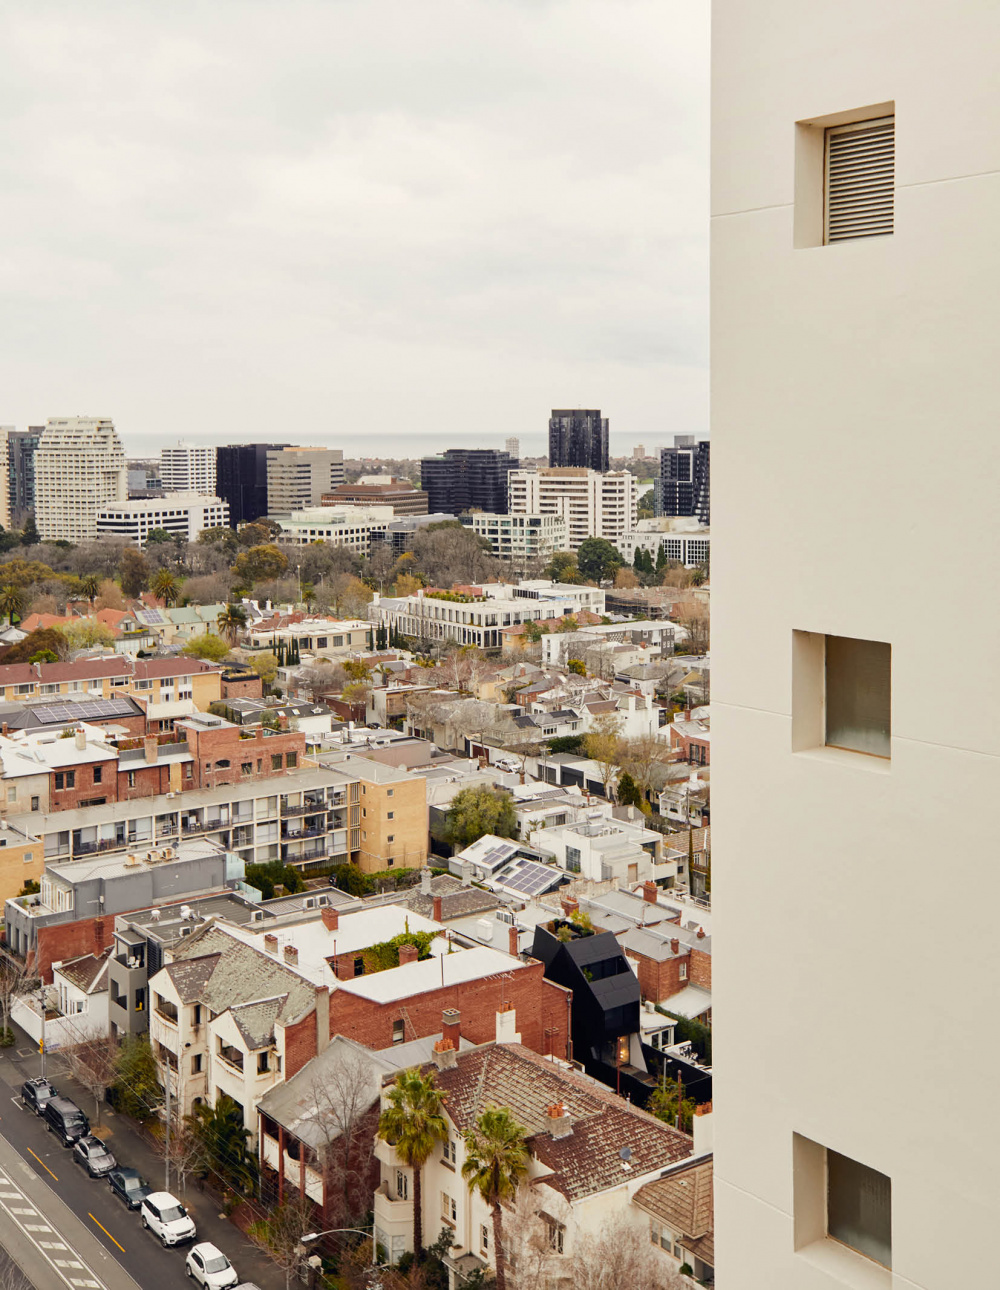 Domain Park: Melbourne’s Revolutionary 1960s Apartment Building